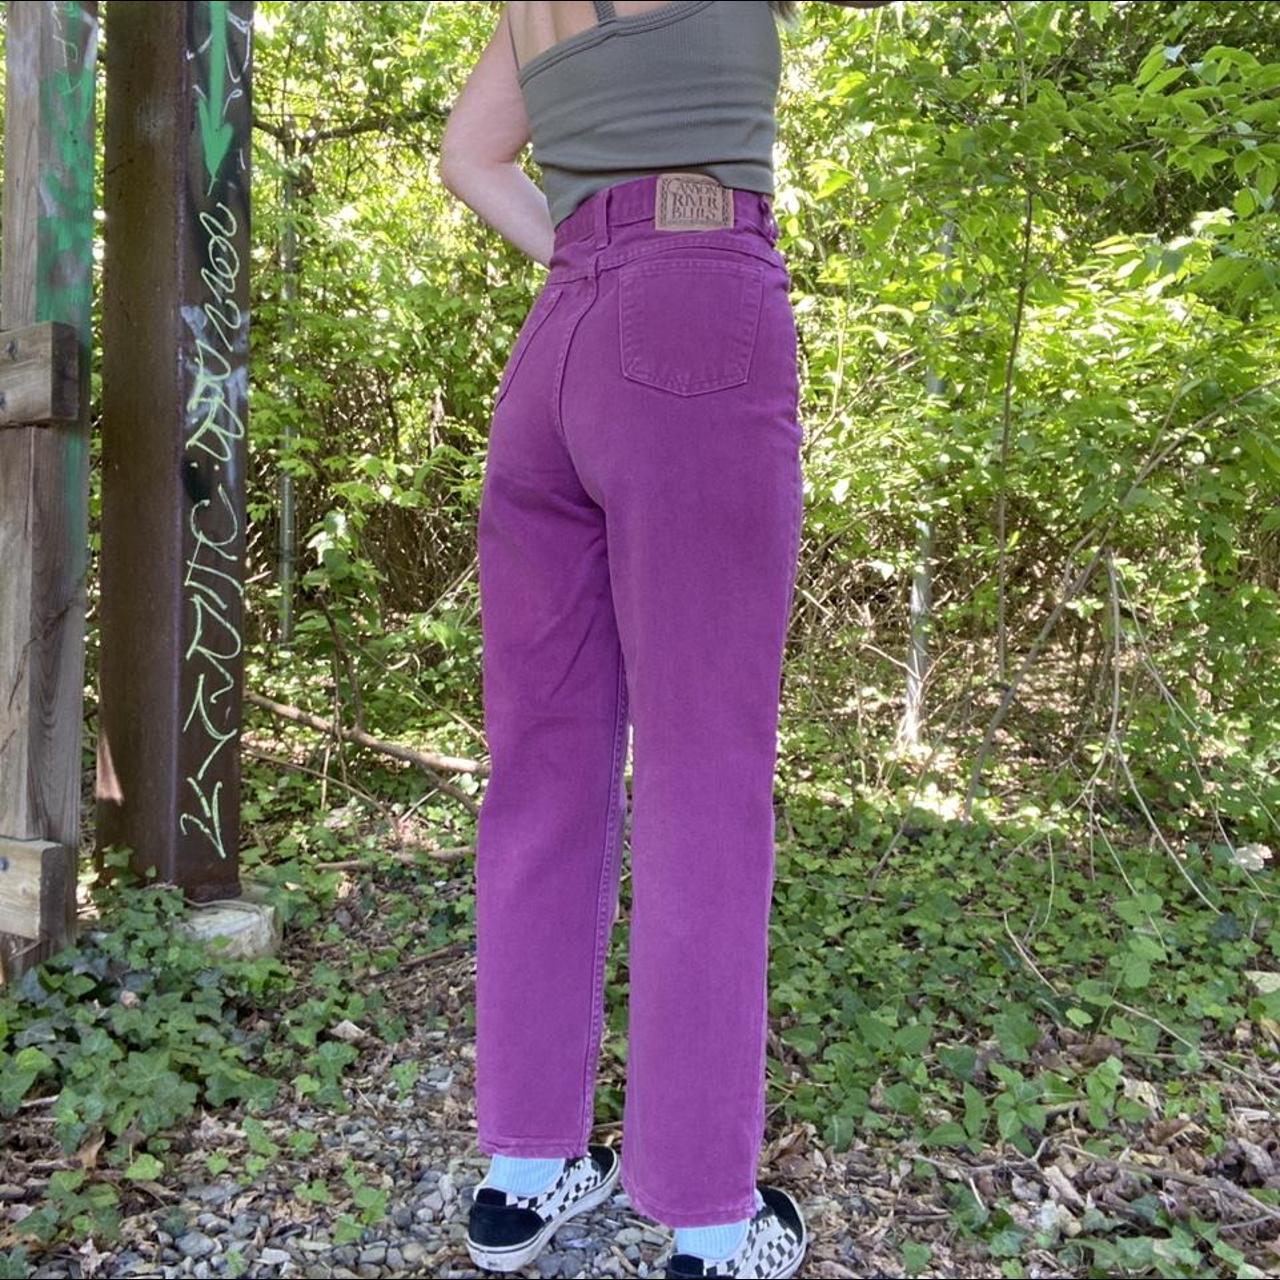 Canyon River Blues Women's Purple Jeans